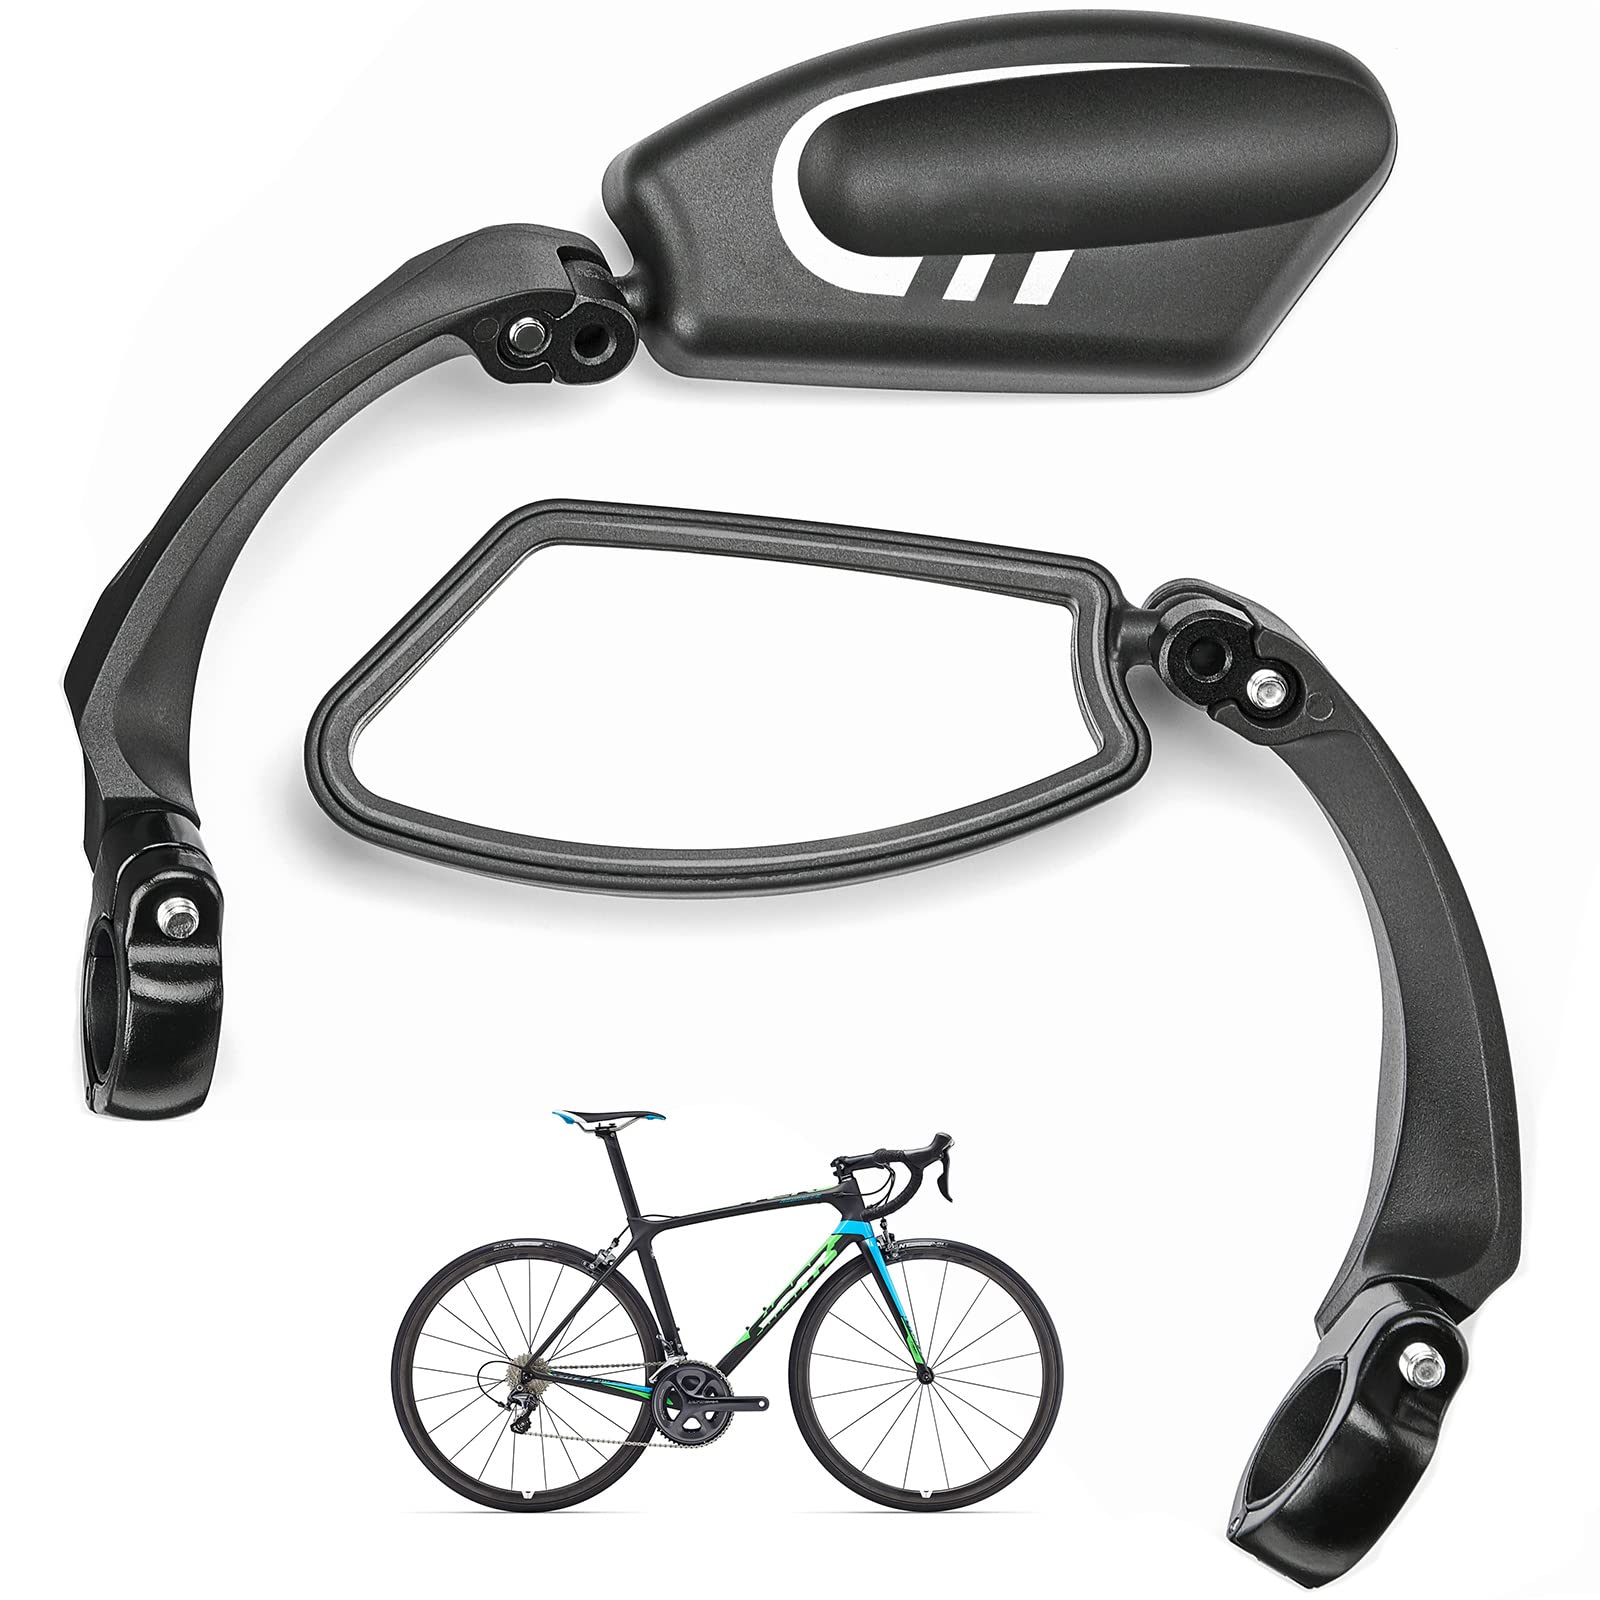 ISSYZONE 2 Stück Fahrradspiegel für E-Bike, Fahrrad Rückspiegel 360°drehbar, Lenkerspiegel mit Linke Seite und Rechte Seite für Fahrrad, Mountainbike, Rennrad von ISSYZONE